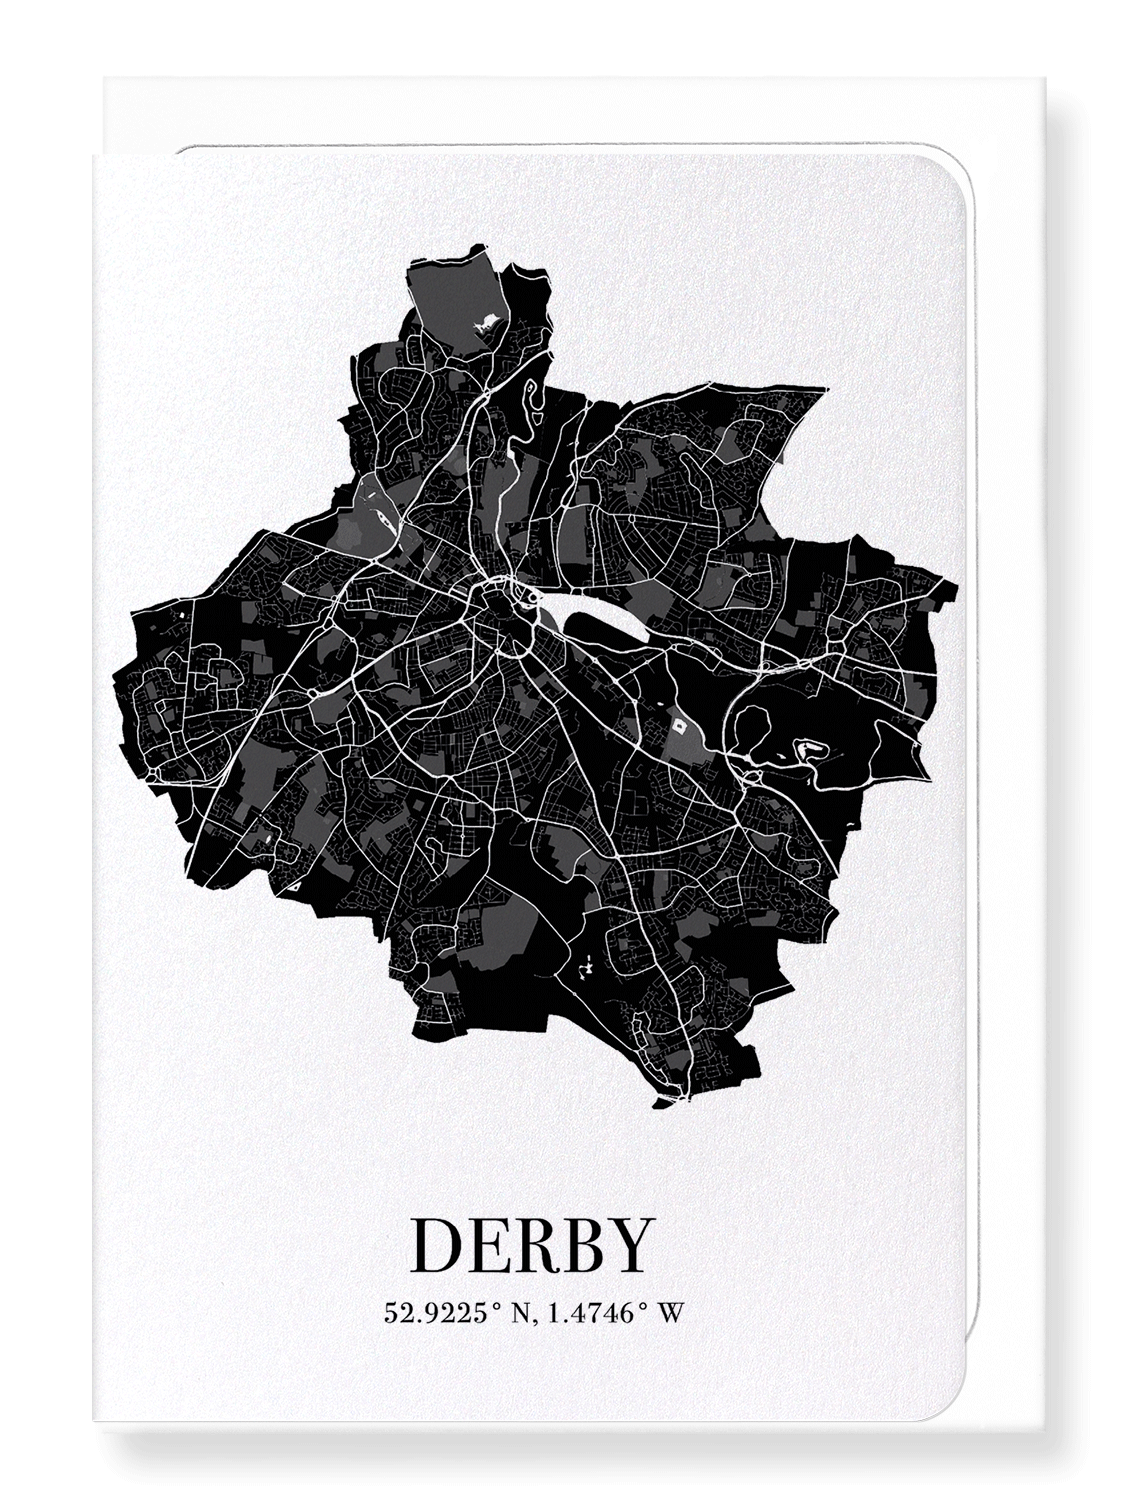 DERBY CUTOUT: Map Cutout Greeting Card